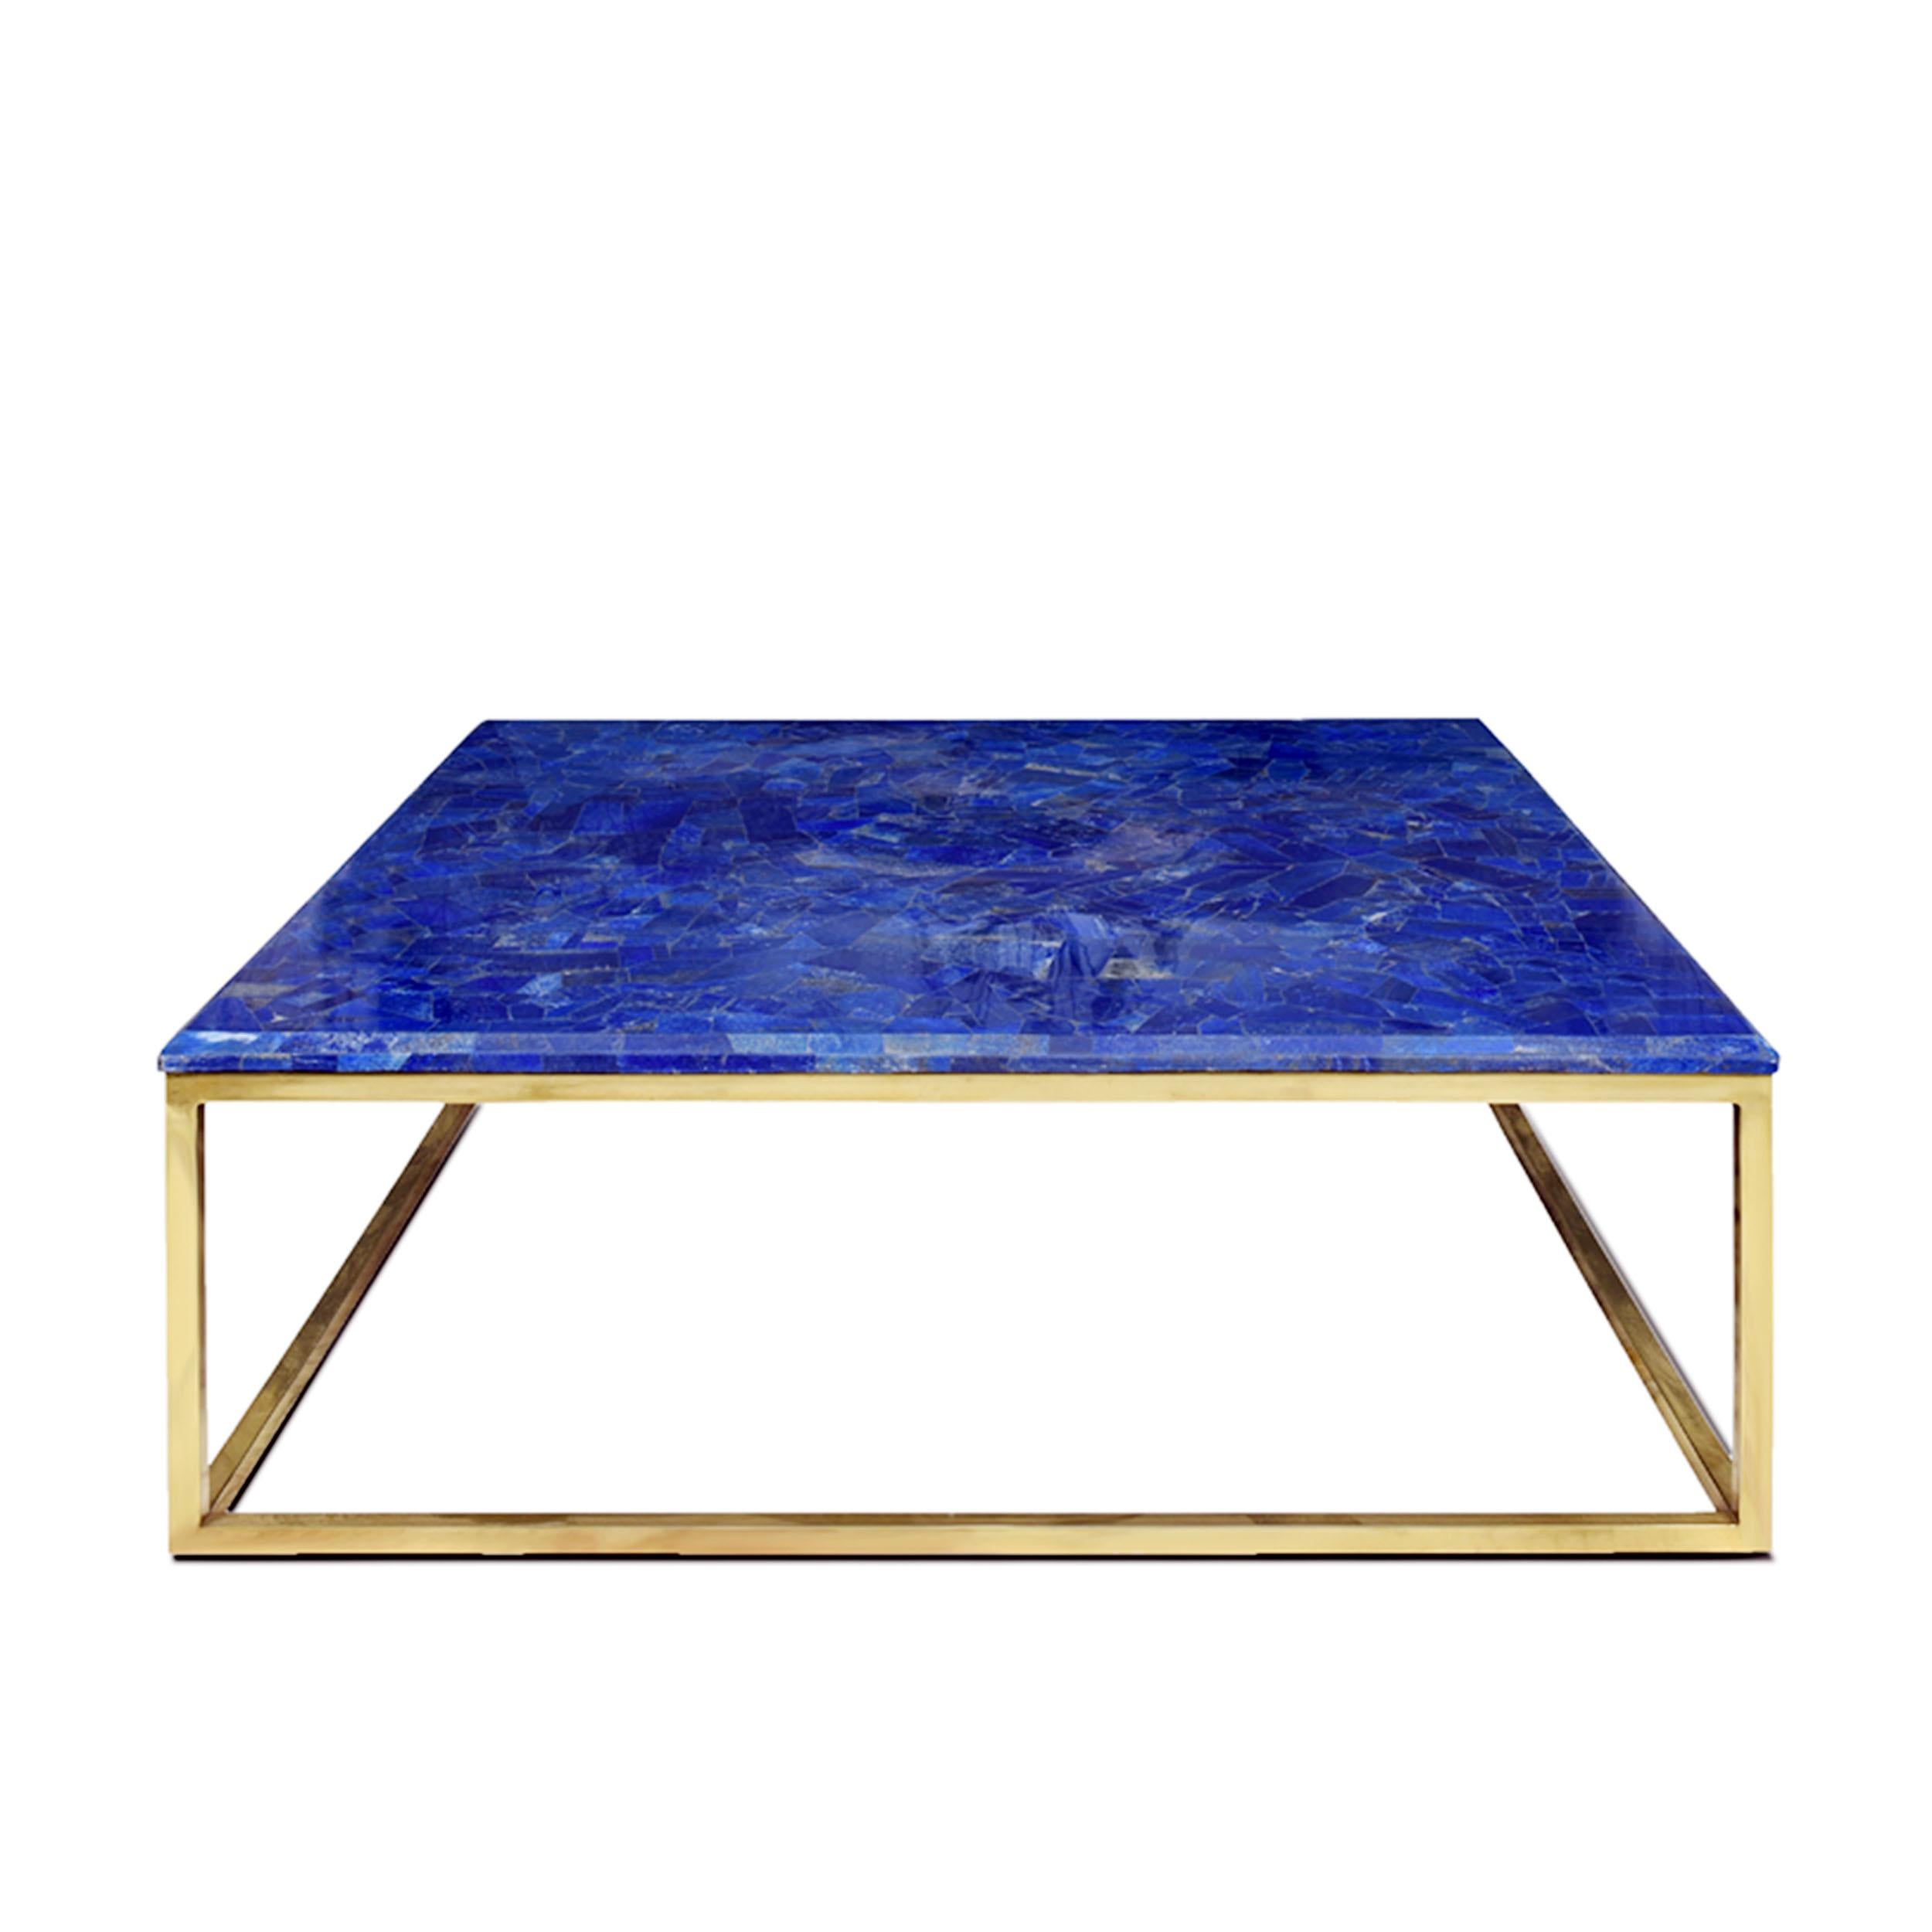 Table centrale Majorelle de Studio Lel
Dimensions : D 107 x L 107 x H 41 cm 
MATERIAL : Lapis Lazuli, laiton.

Il tire son nom du jardin Majorelle de Marrakech, qui a été entièrement peint par Jacques Majorelle dans la riche teinte de bleu lapis qui